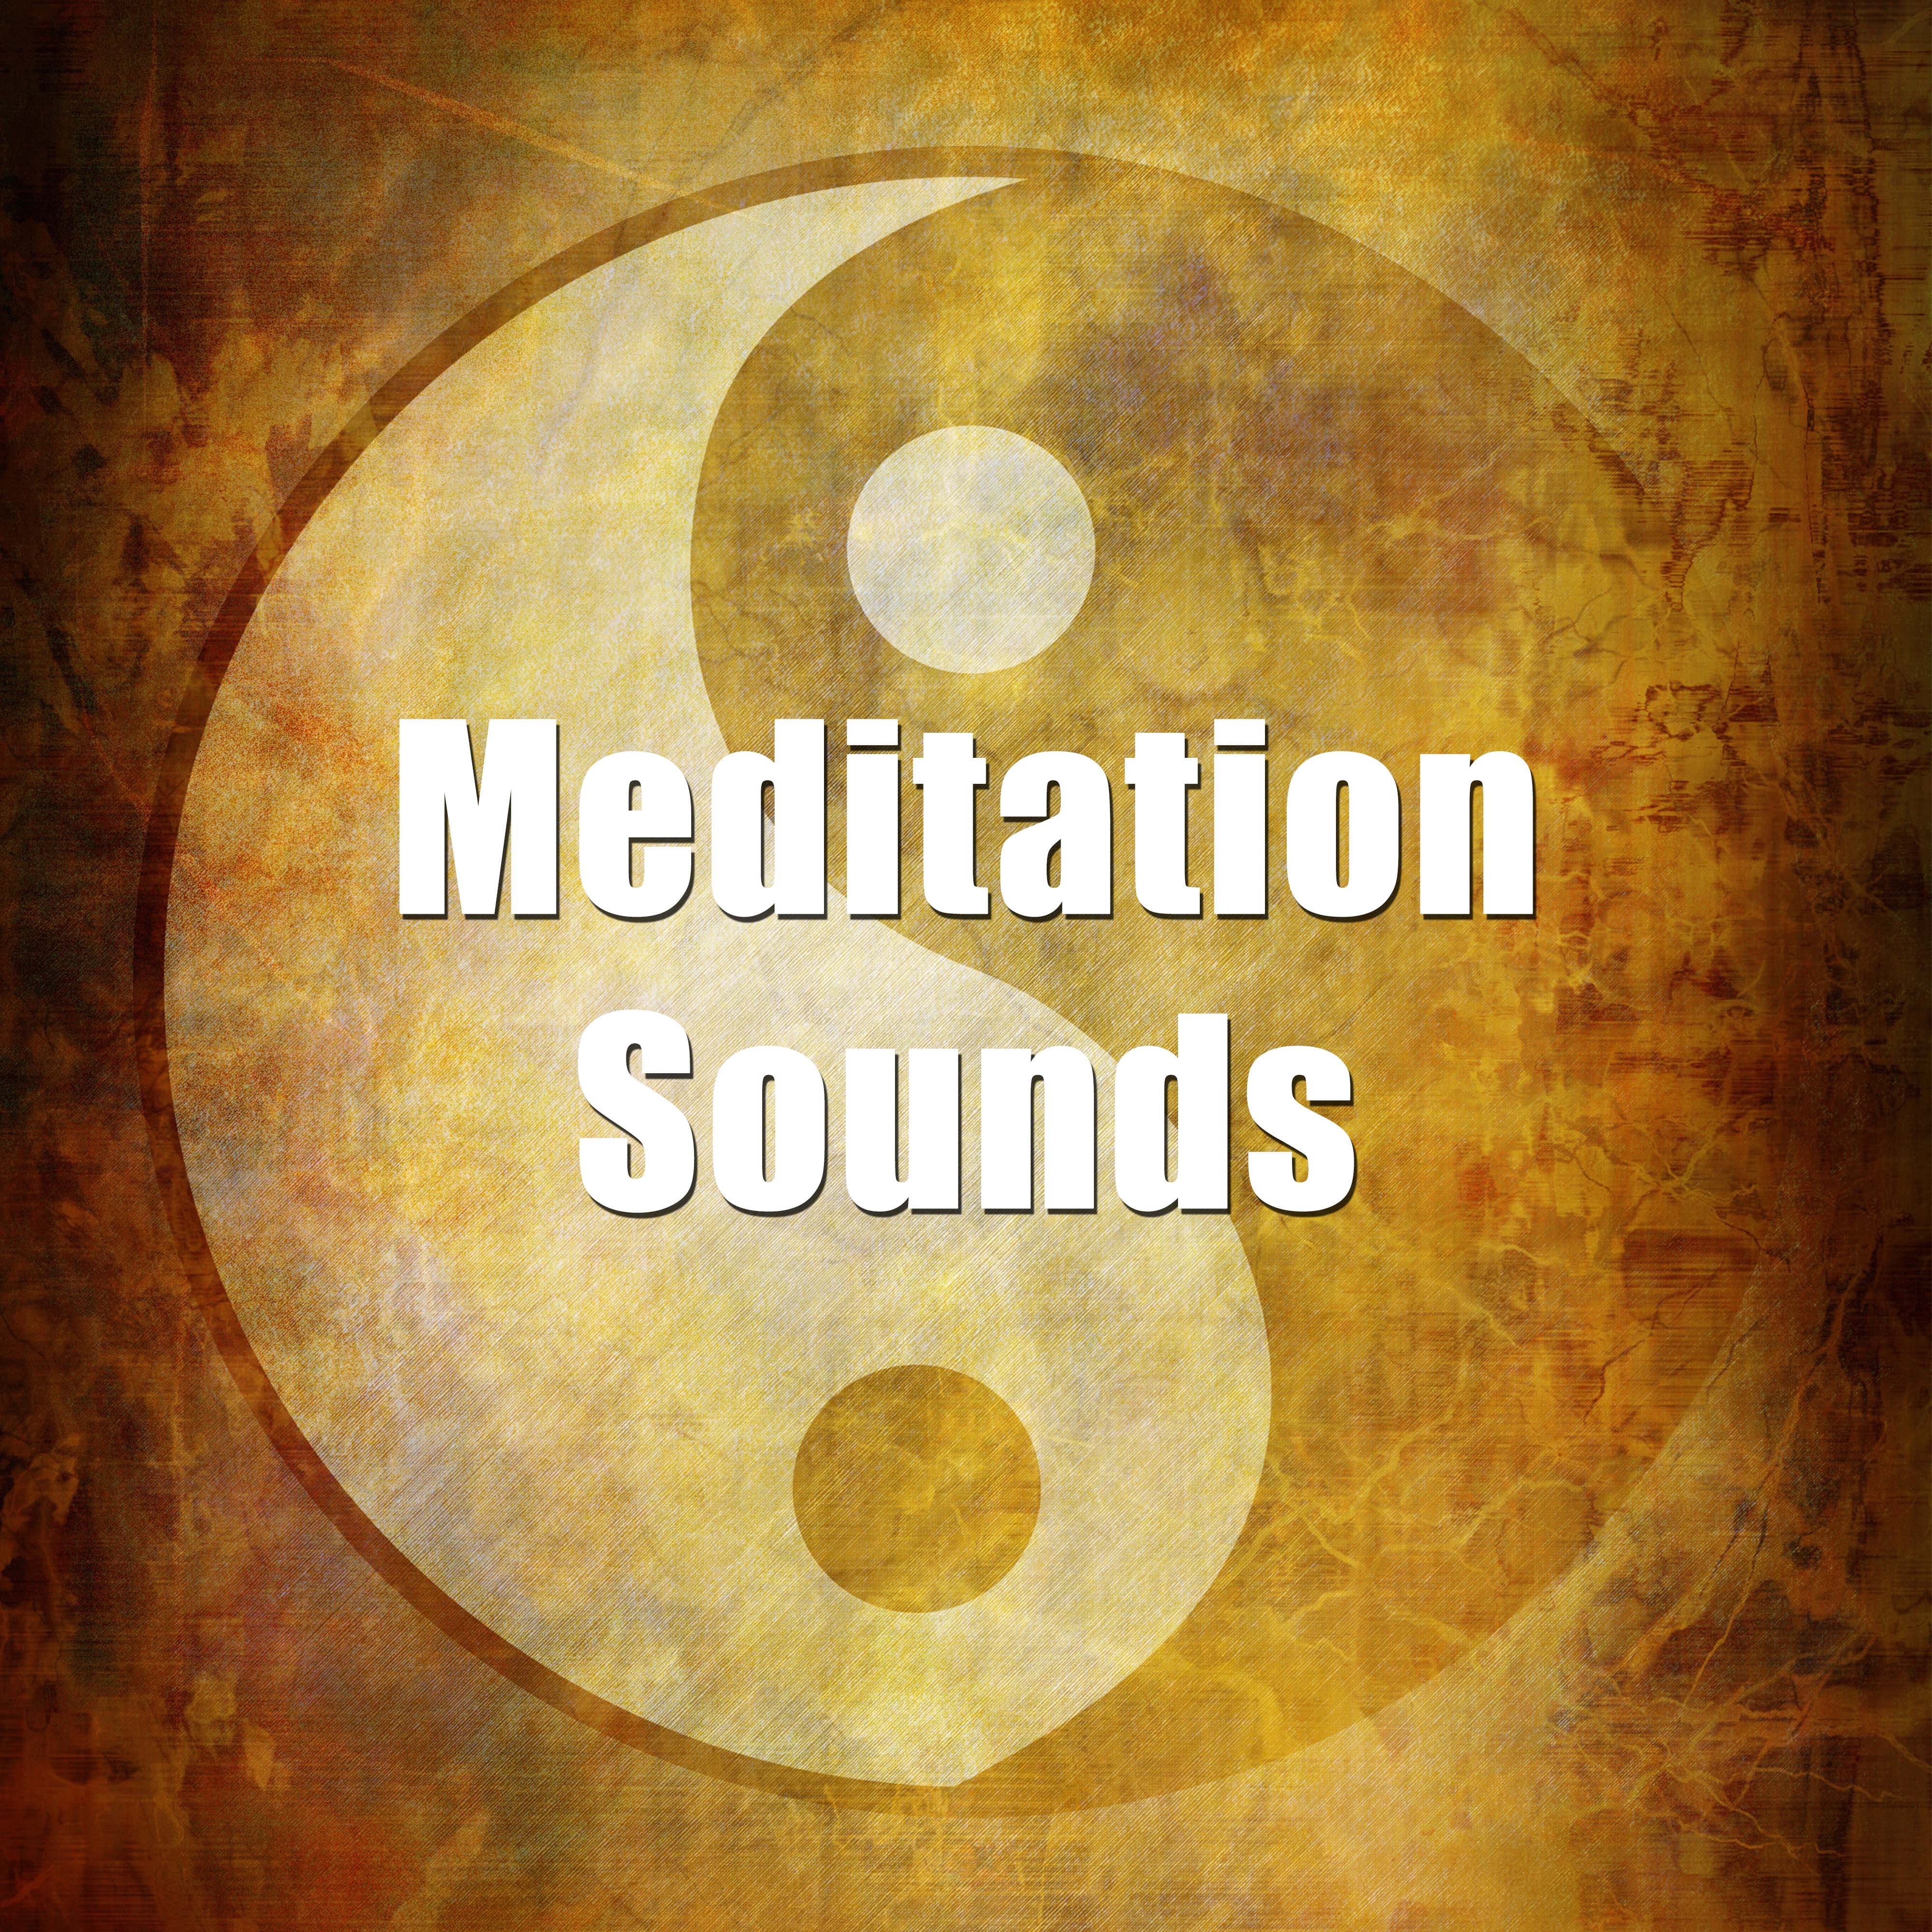 Meditation Sounds